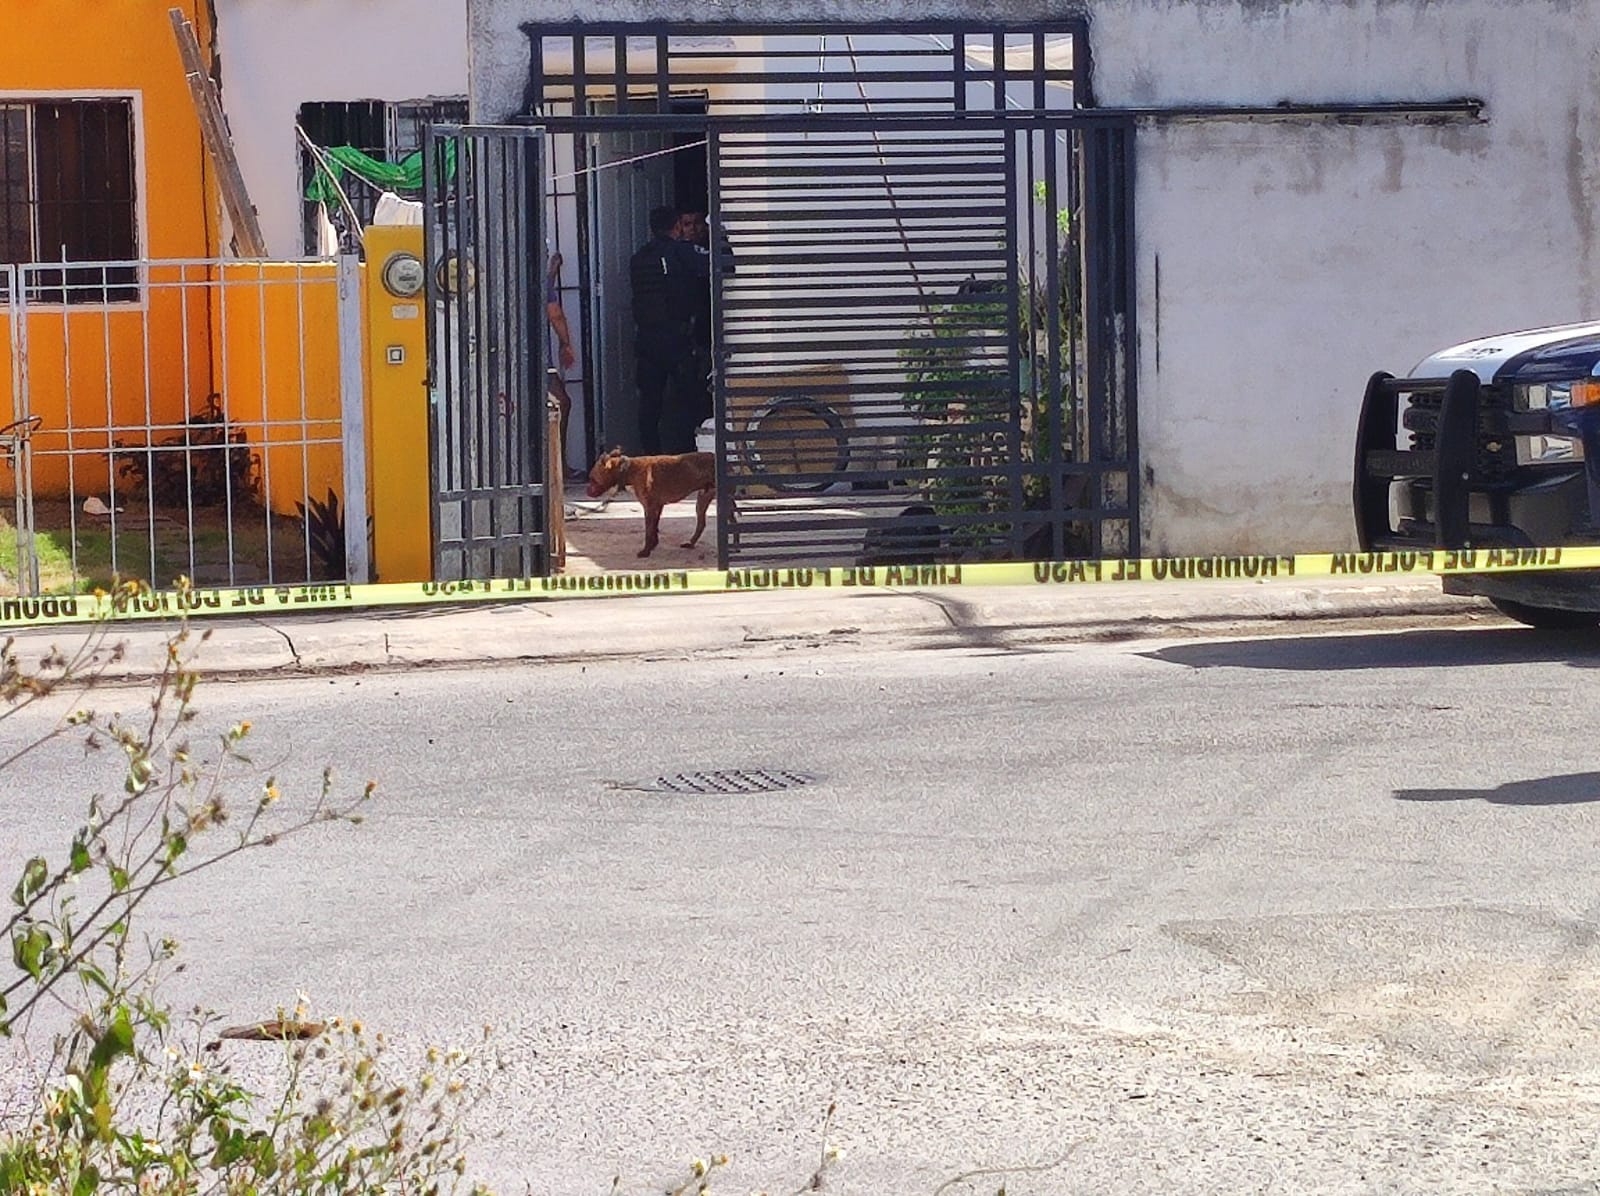 La víctima fue llevada de urgencia al Hospital General de Cancún para su atención médica tras ser atacado a balazos